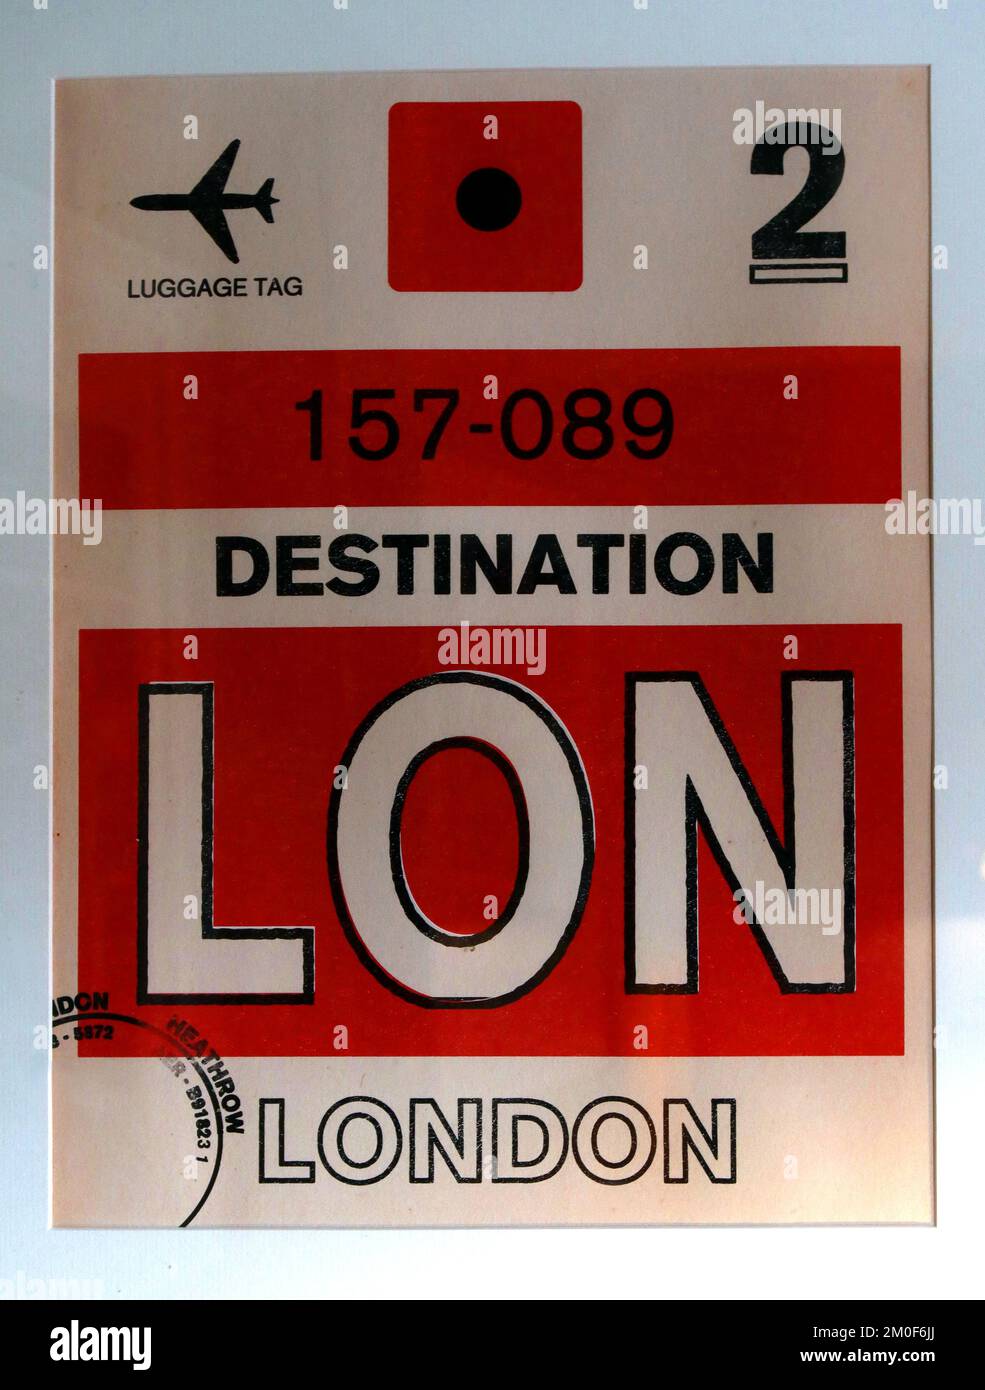 Londres Heathrow encadré, étiquette bagage classe 2nd, 157-089, destination LON Banque D'Images